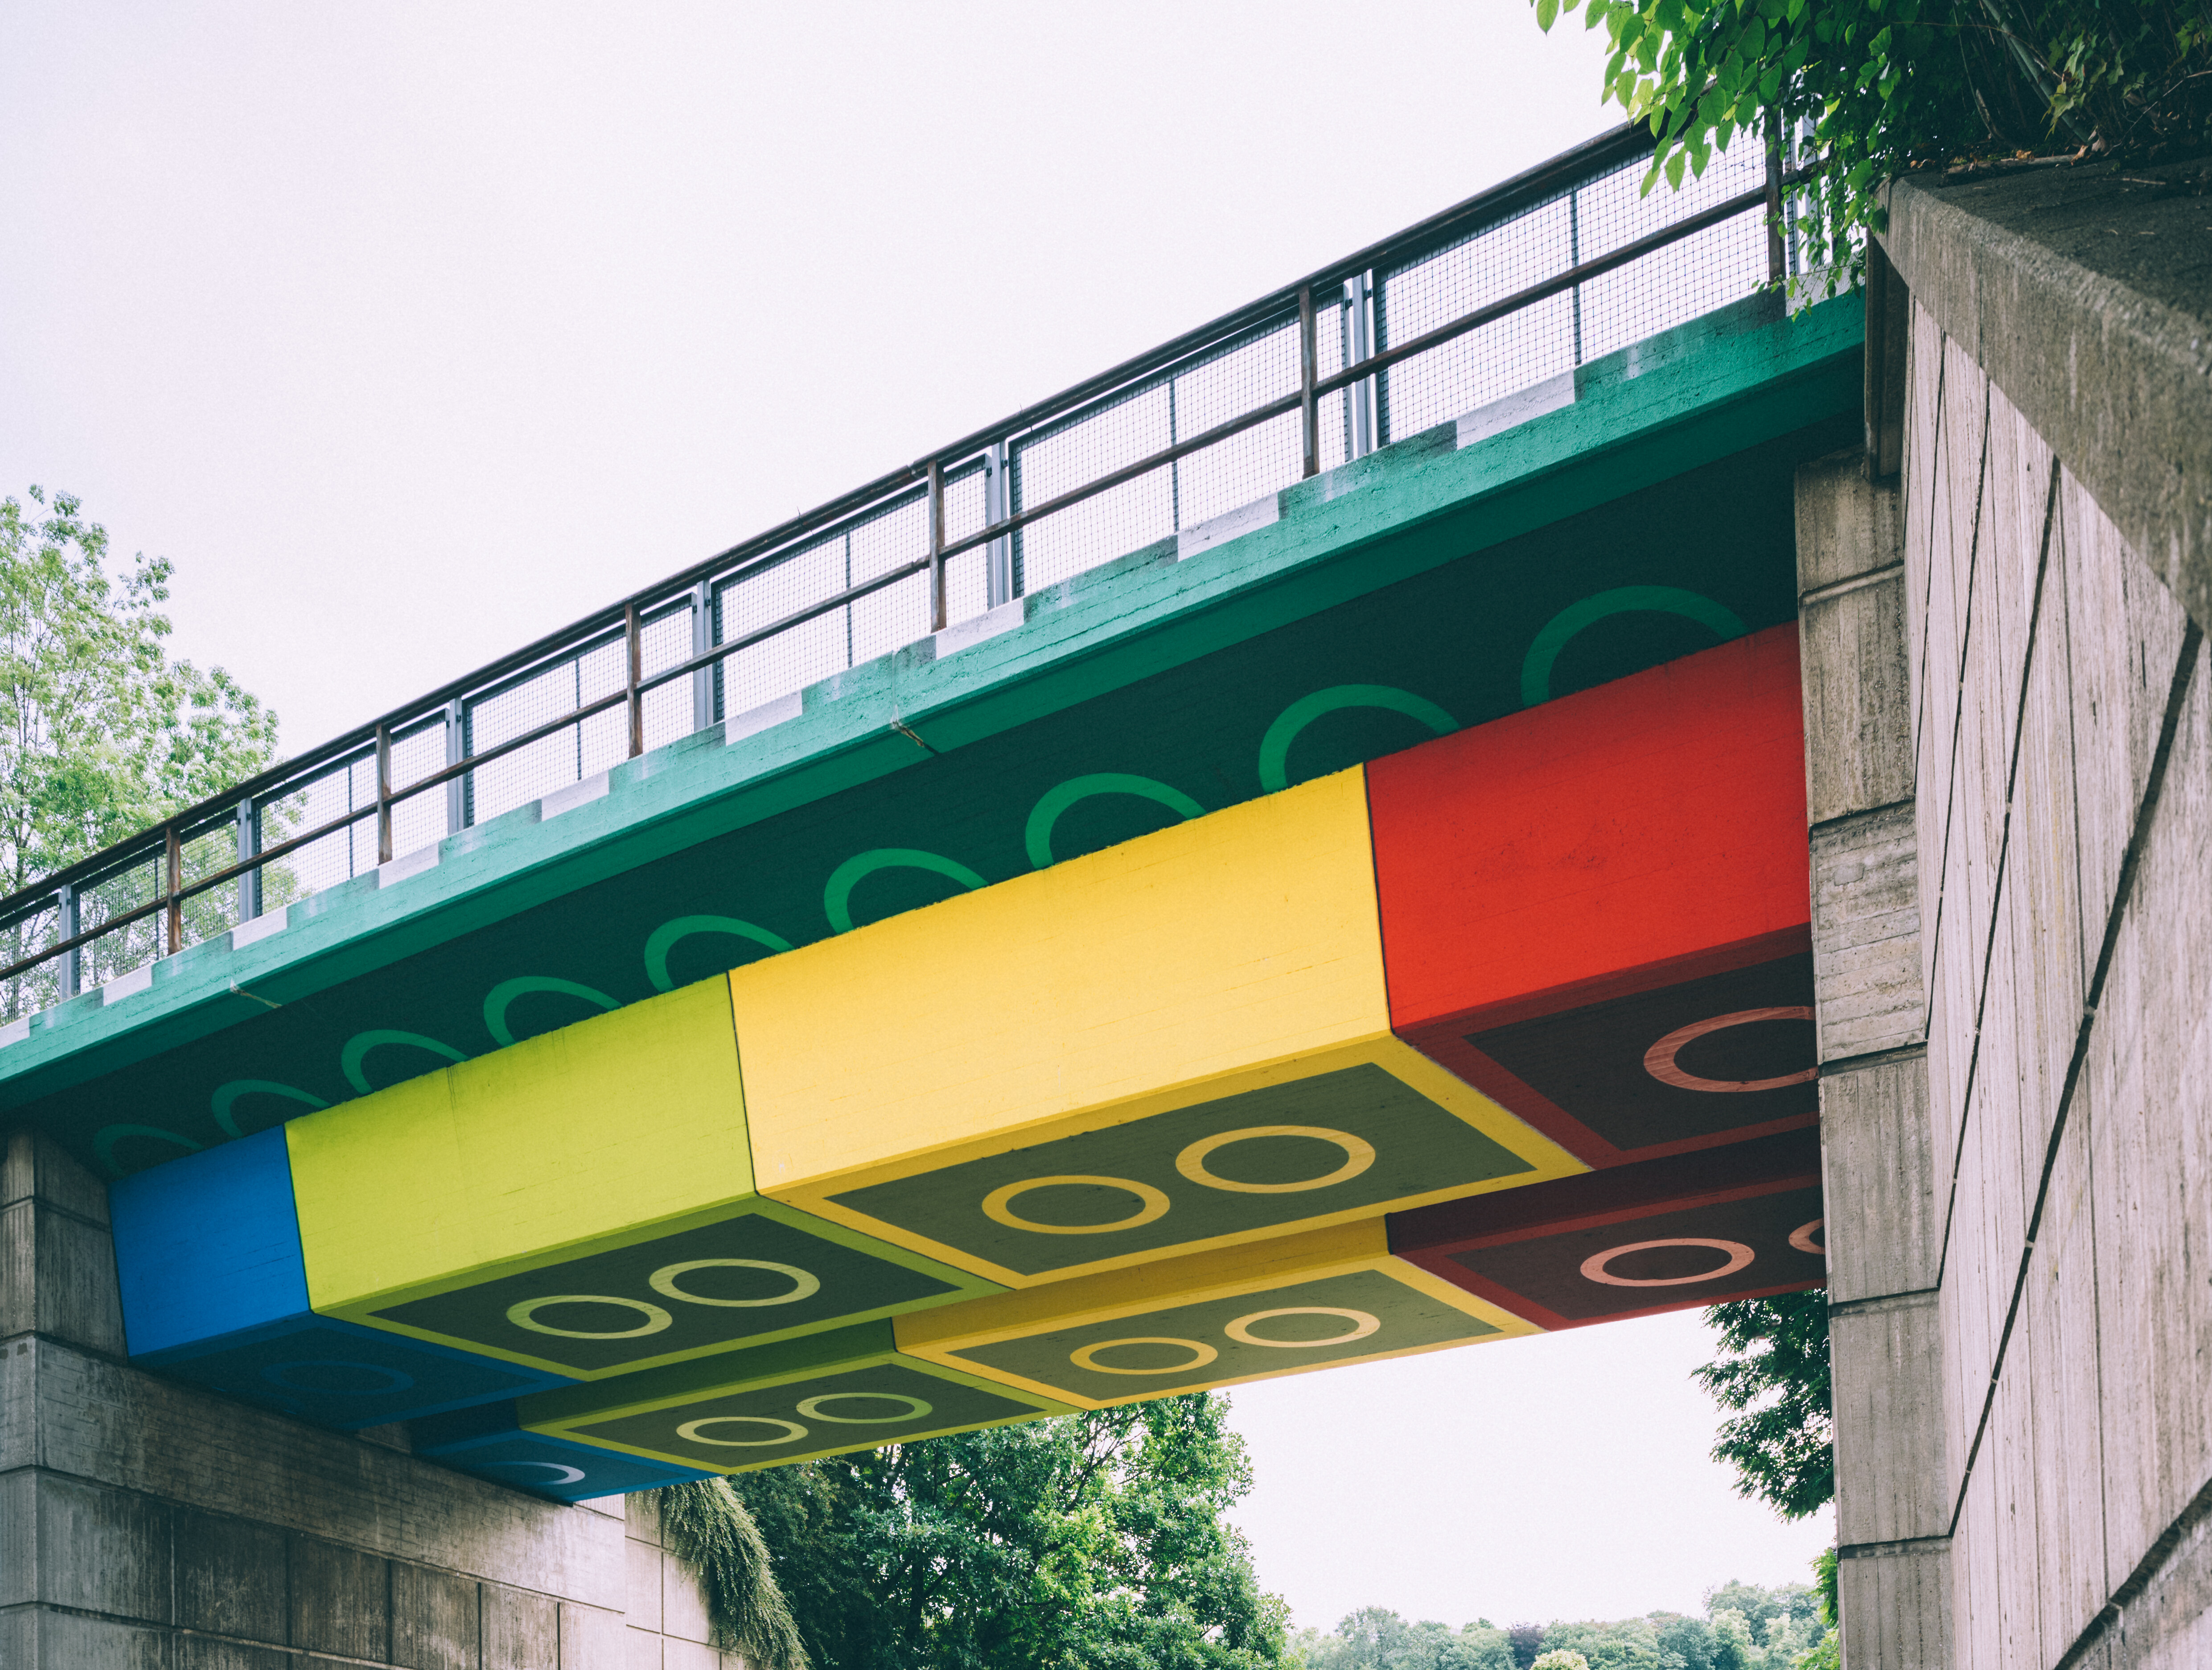 Die "Legobrücke" in Wuppertal, vom Künstler Martin Heuwold bemalt in Form von überdimensionalen Legosteinen